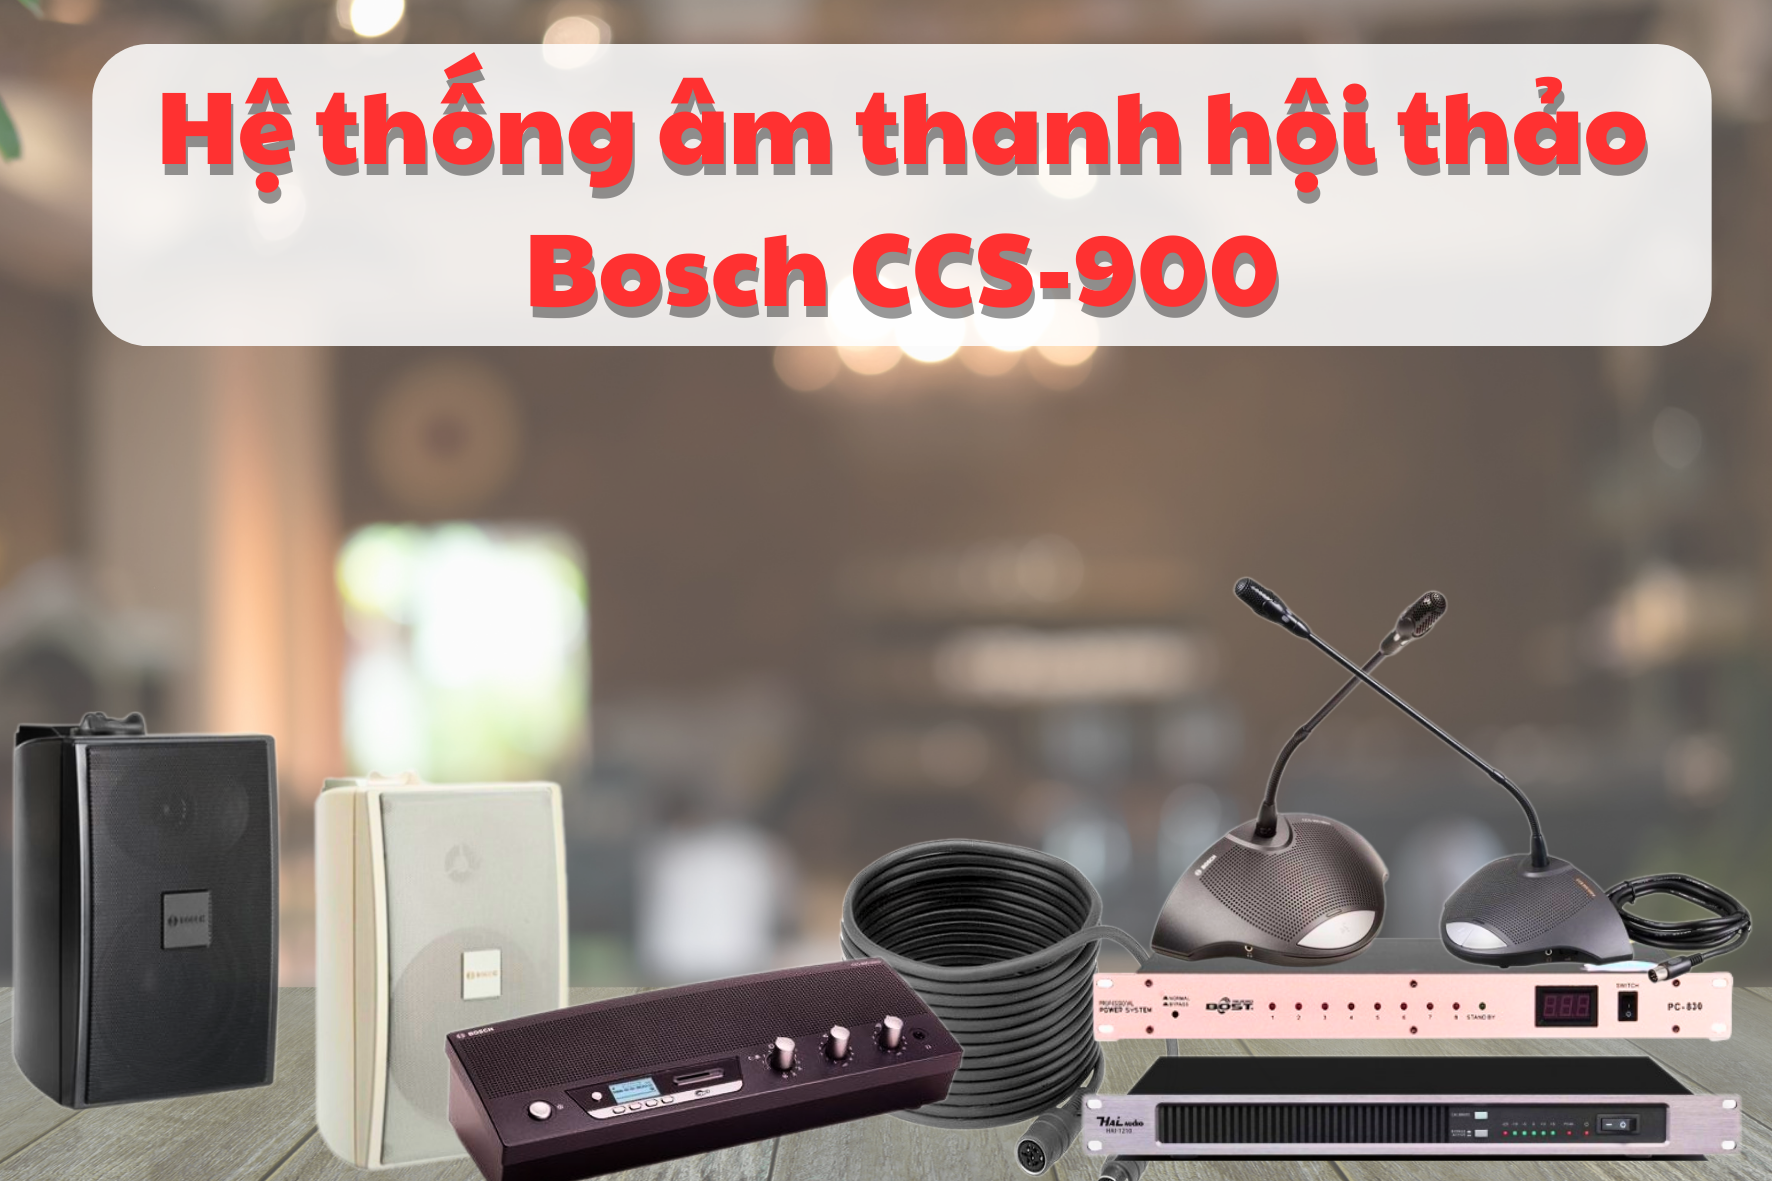 Dàn âm thanh hội thảo Bosch CCS-900 cho diện tích 45 - 65m2